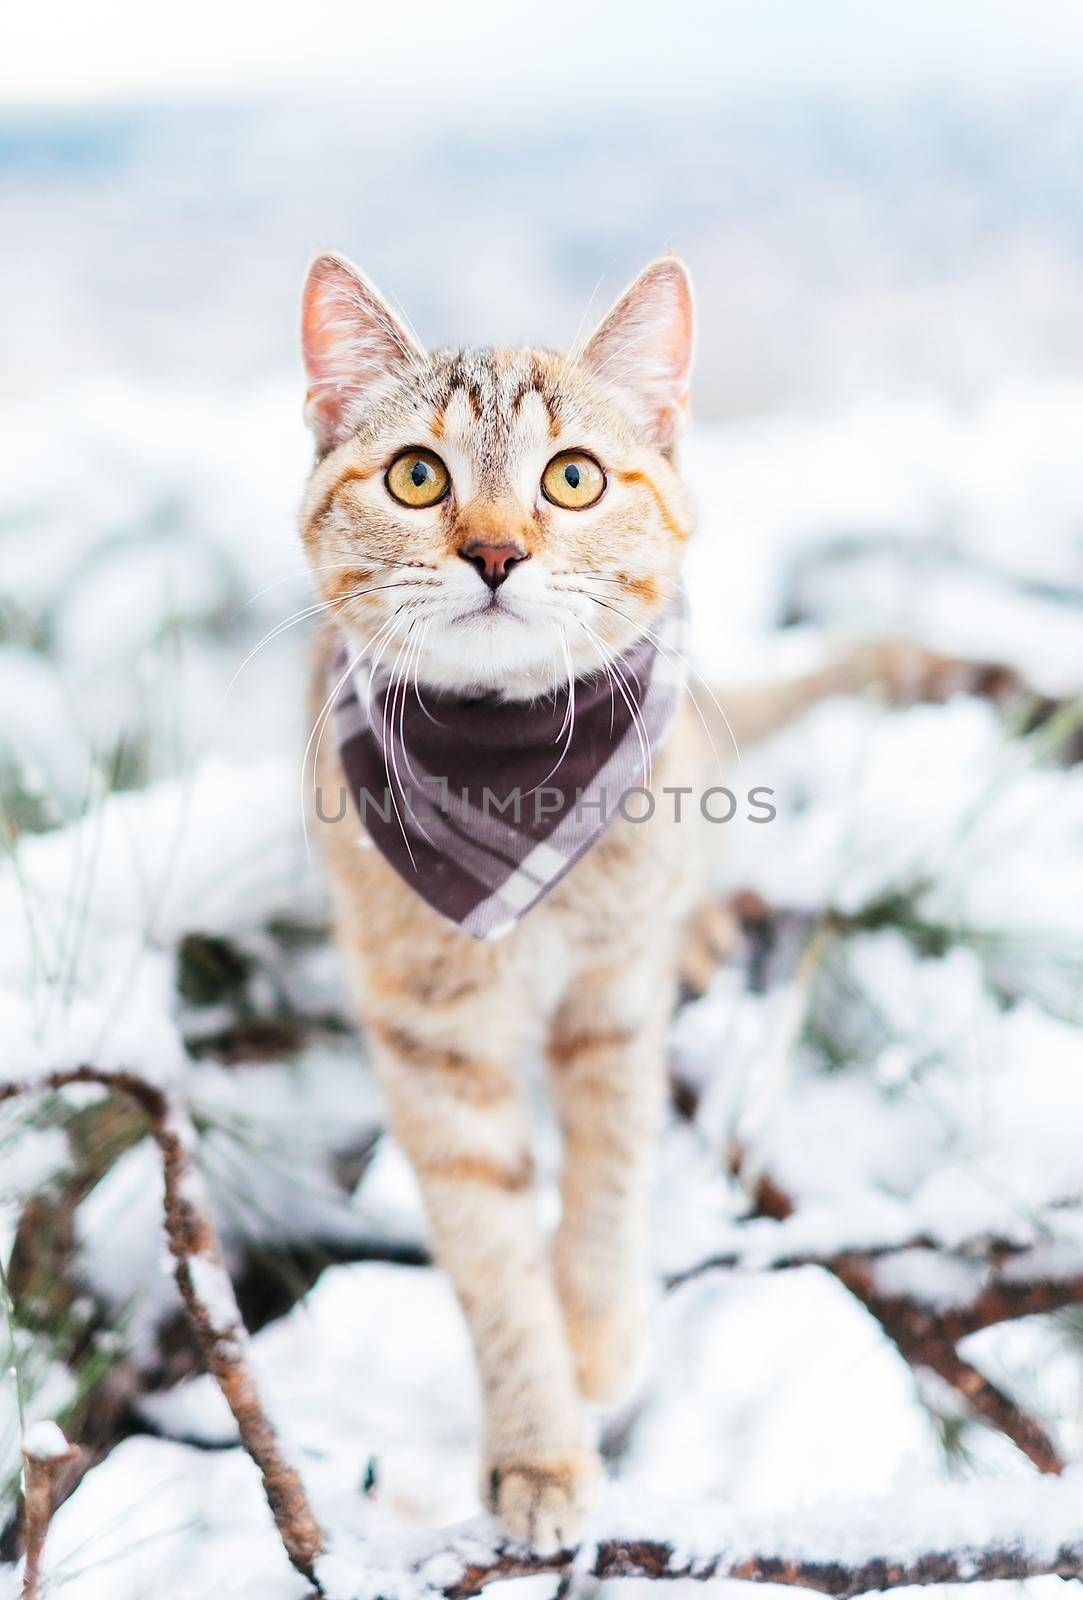 Cute explorer cat walking in winter outdoor. by alexAleksei